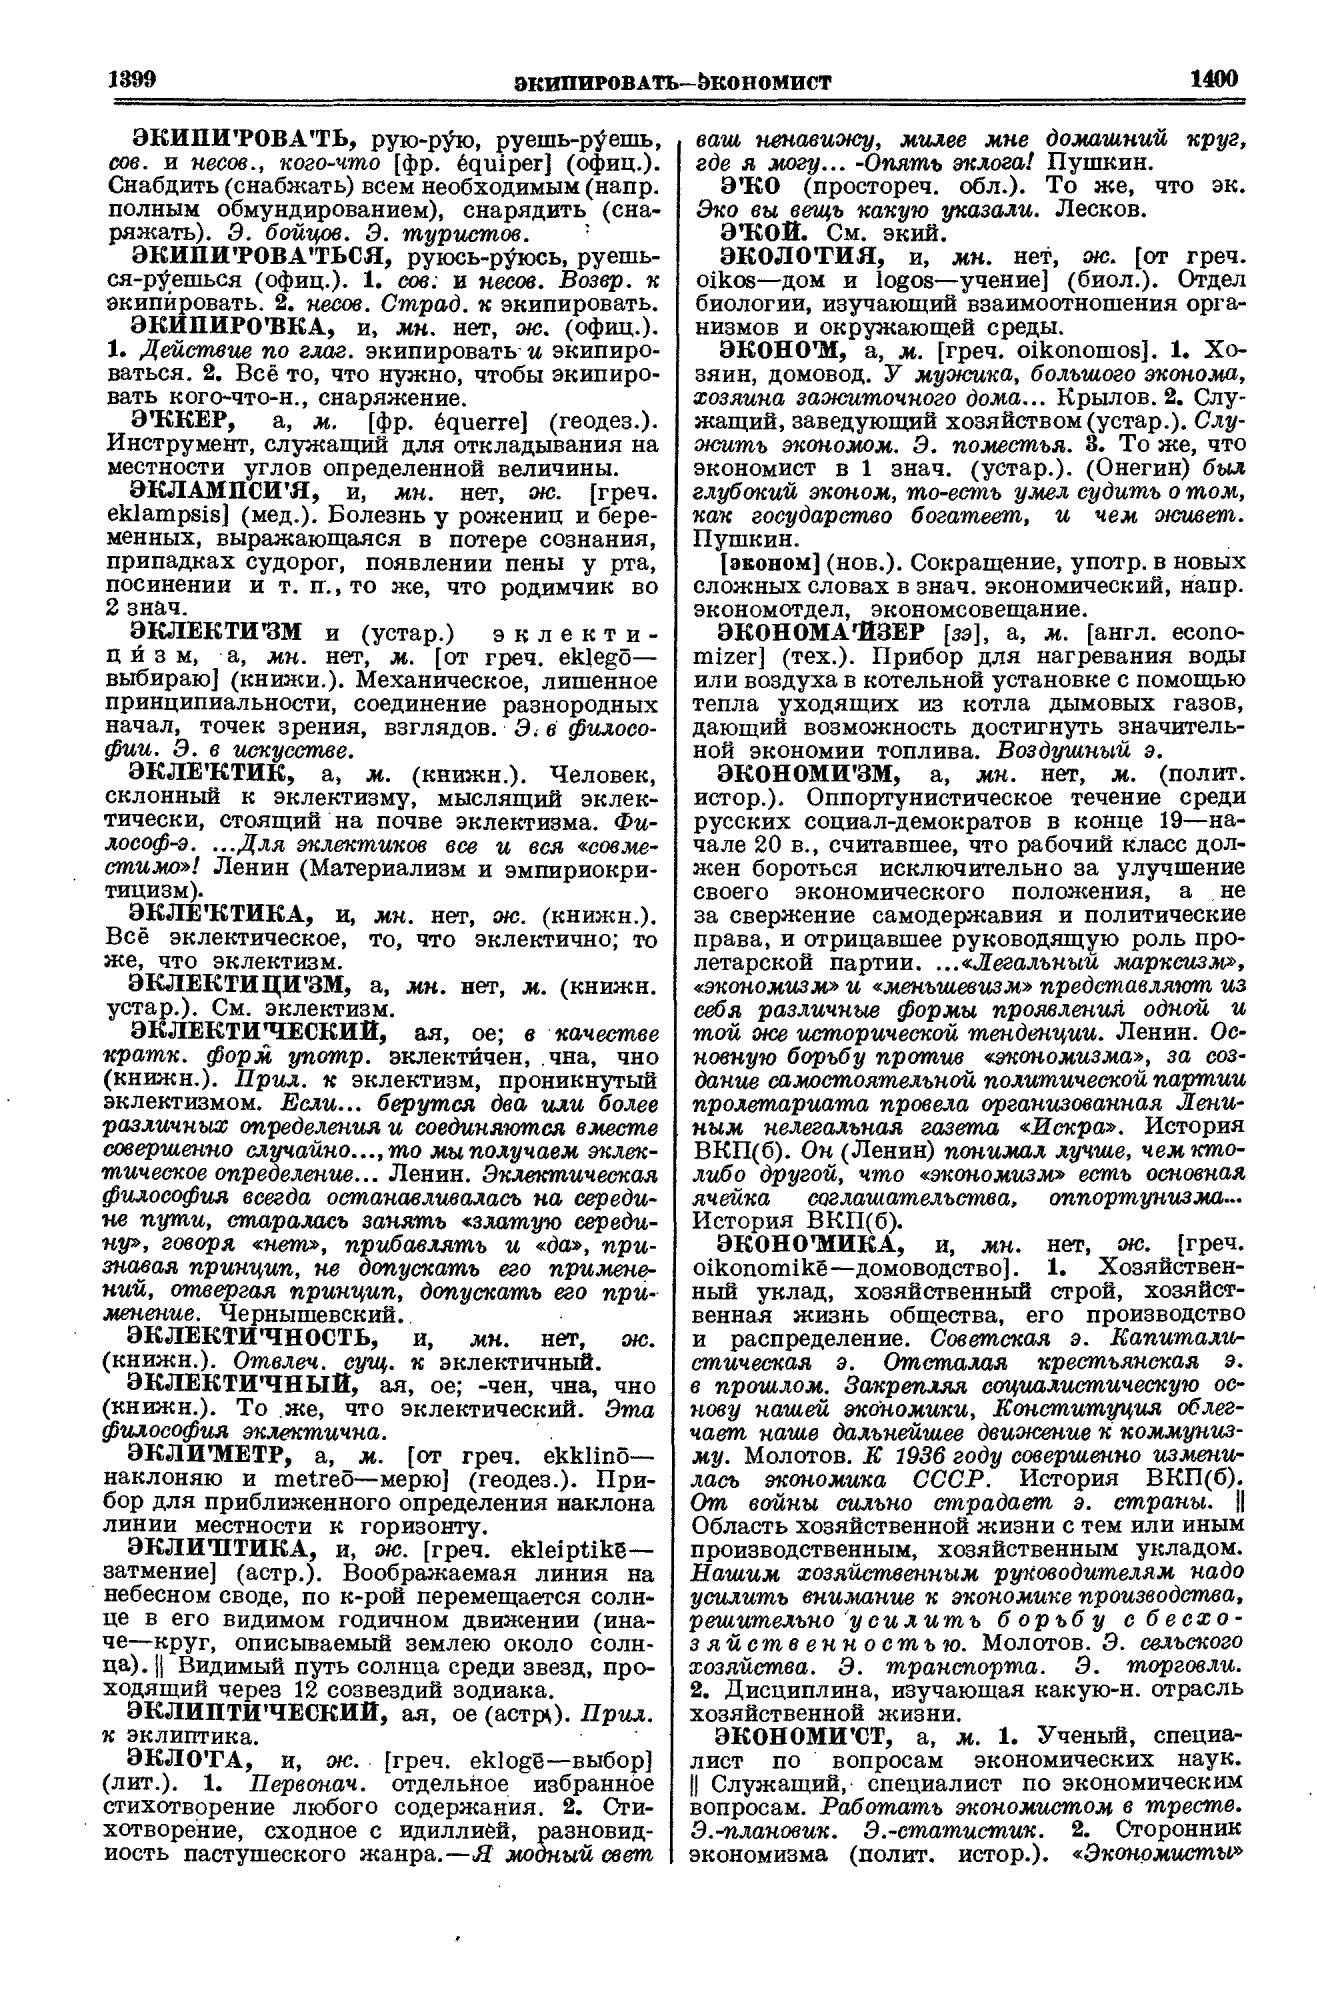 Фотокопия pdf / скан страницы 700 толкового словаря Ушакова (том 1)